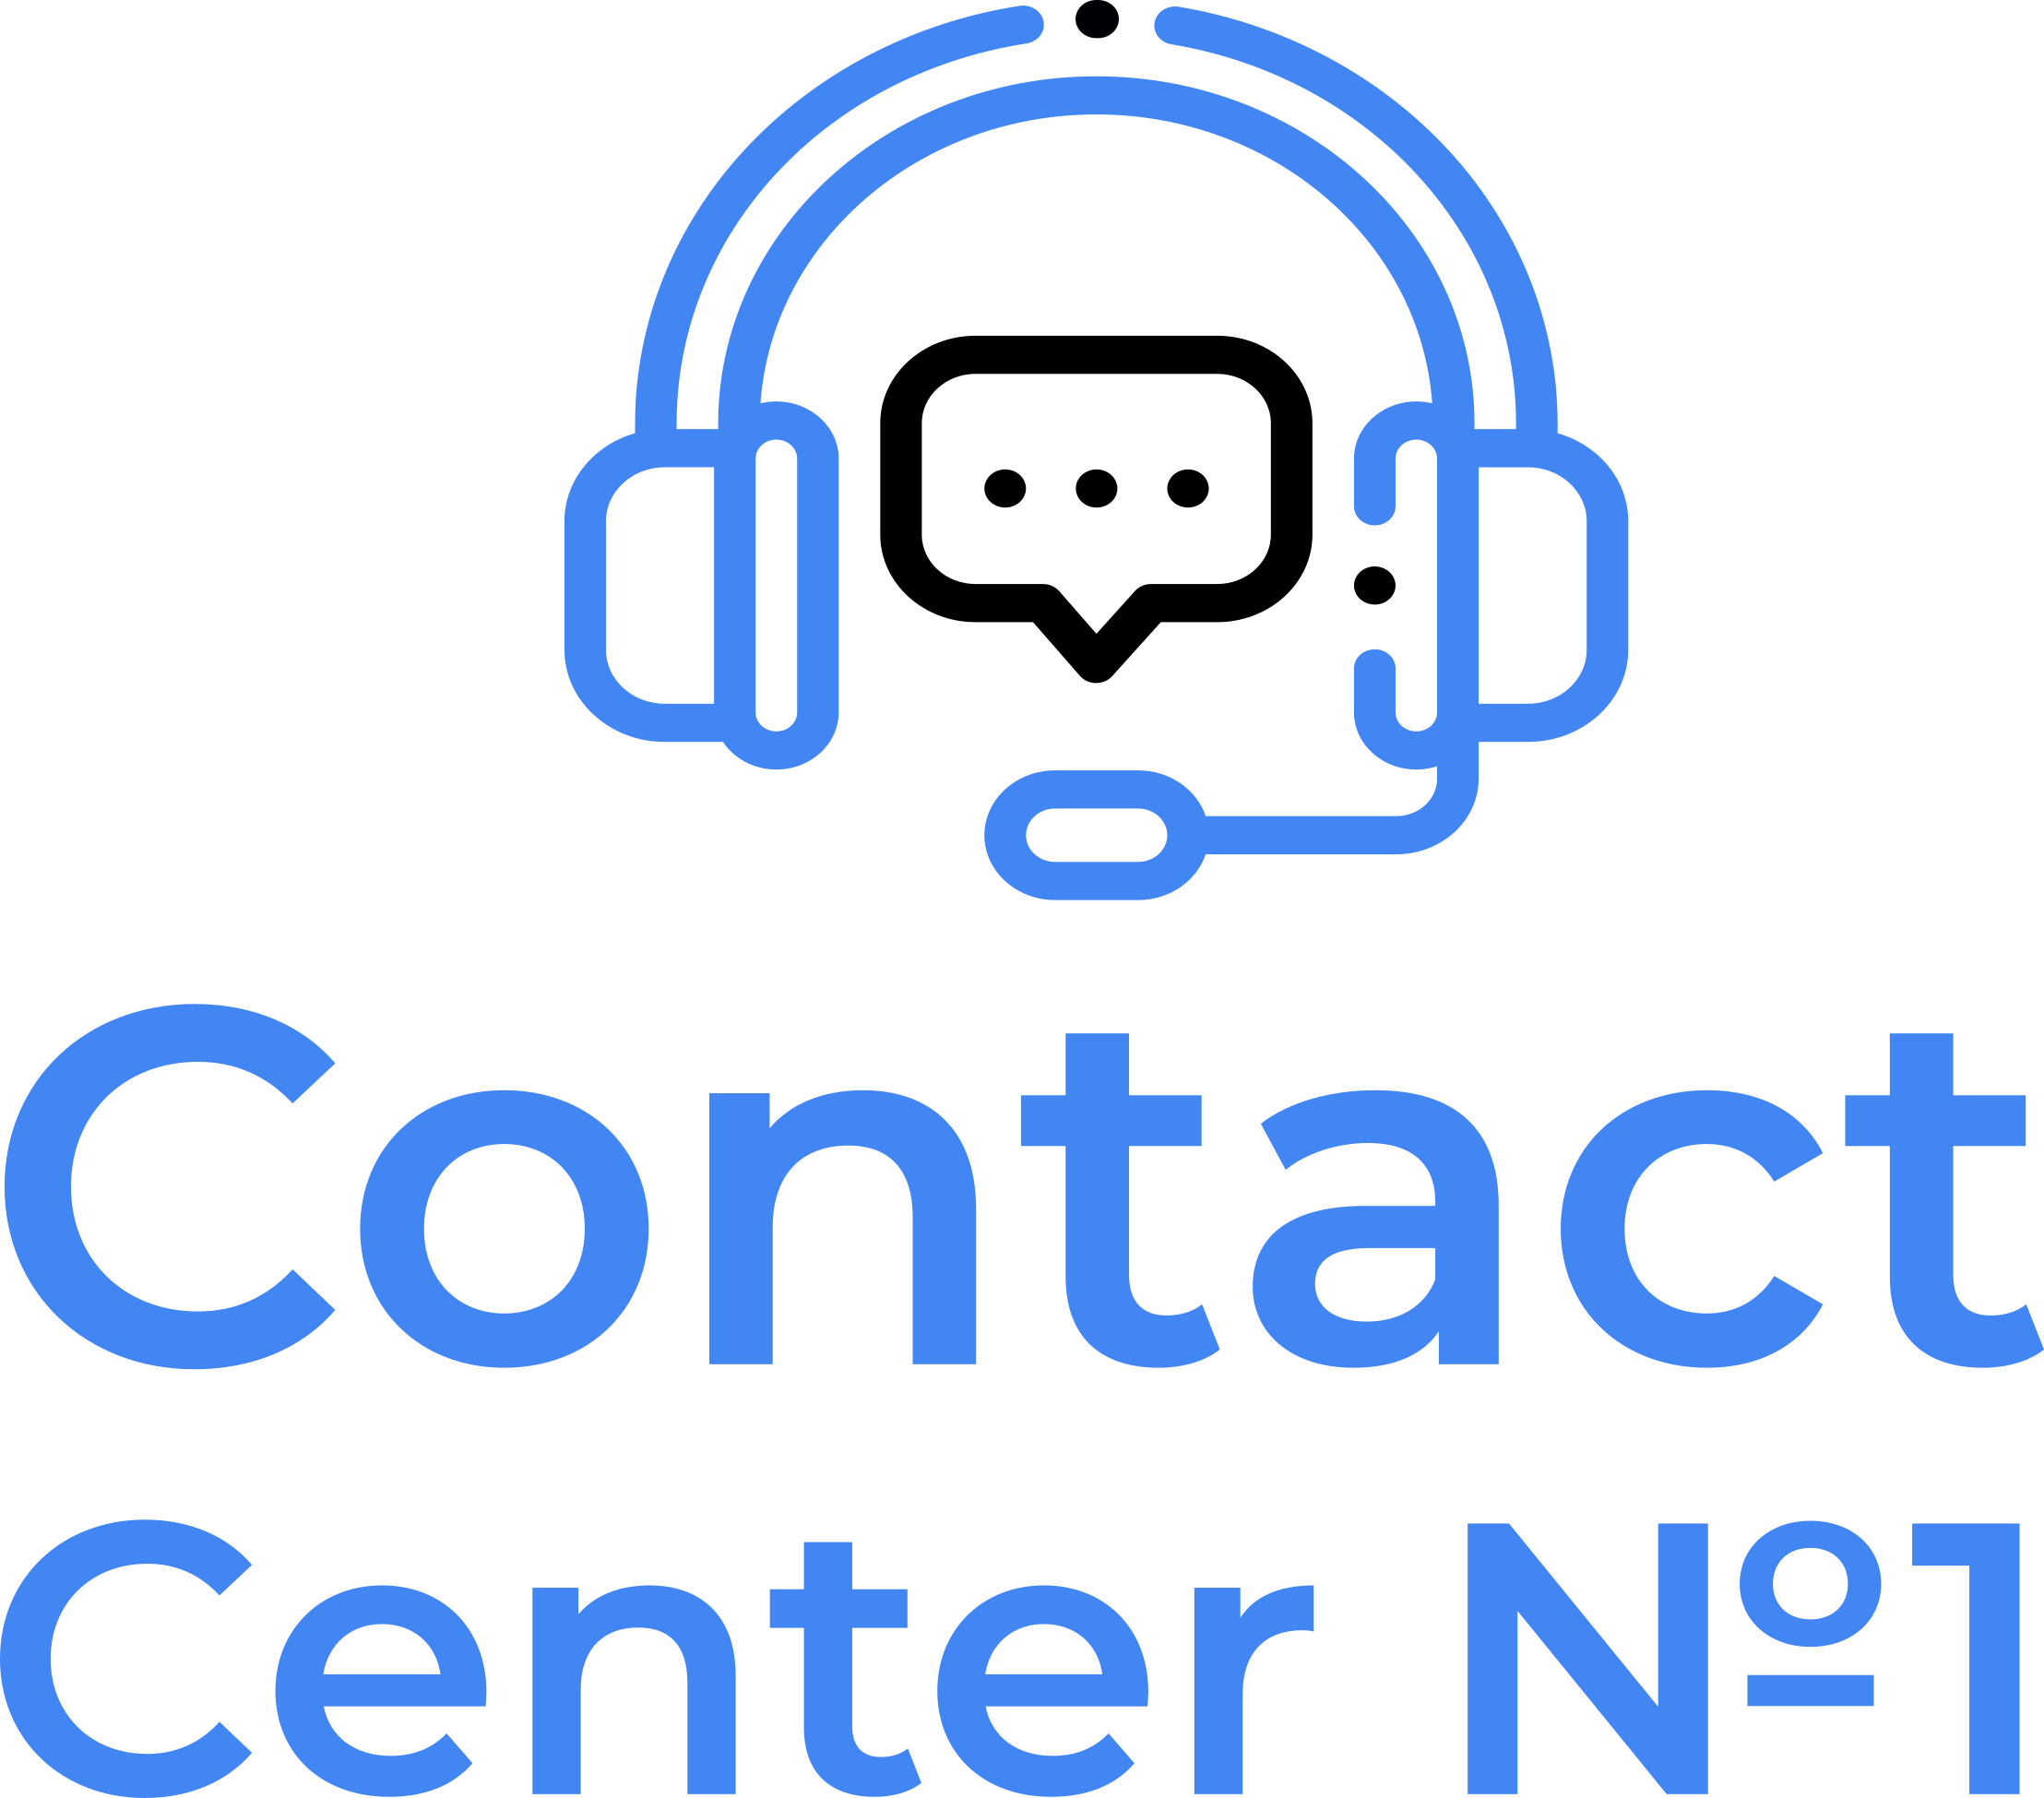 Контакт центр 1. Логотип контактного центра. Contact Center №1. HR contact Center №1. Центр первое слово